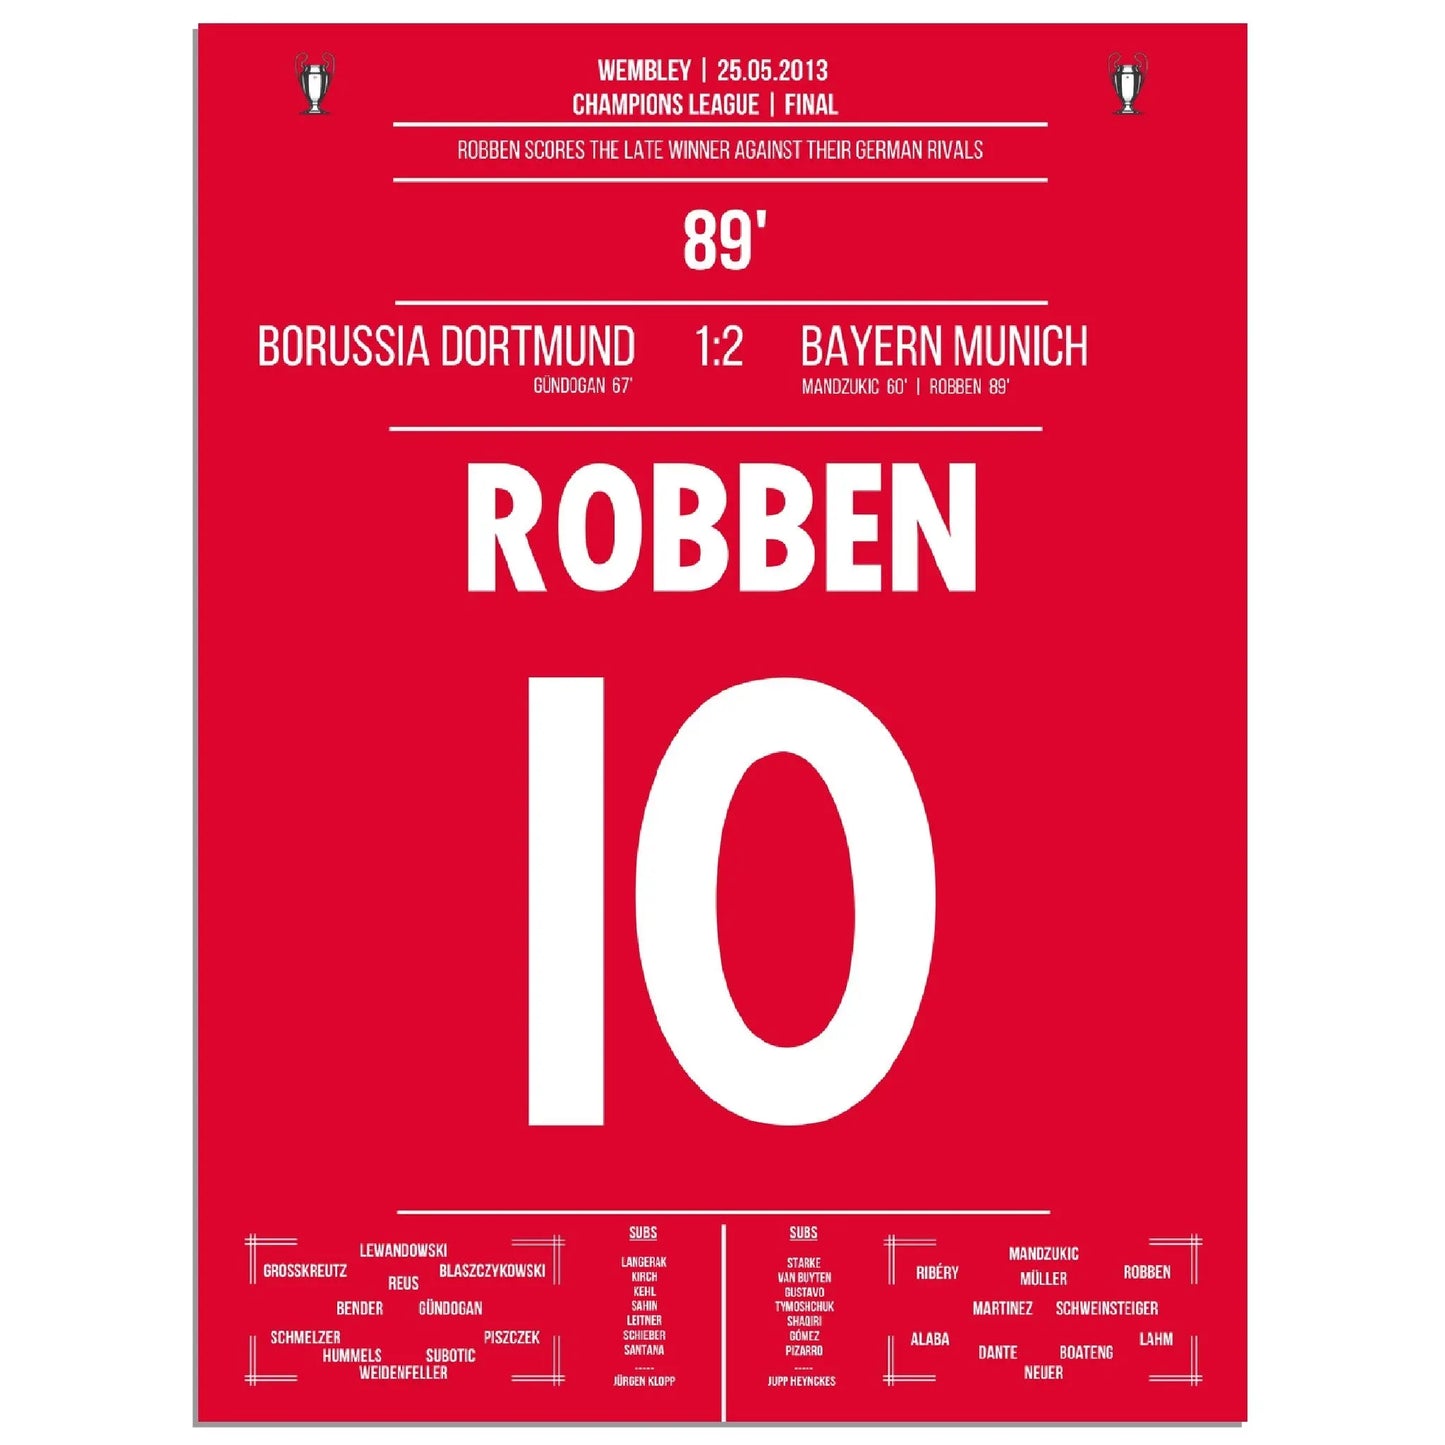 Robben mit spätem Siegtor im deutschen Champions League Finale 